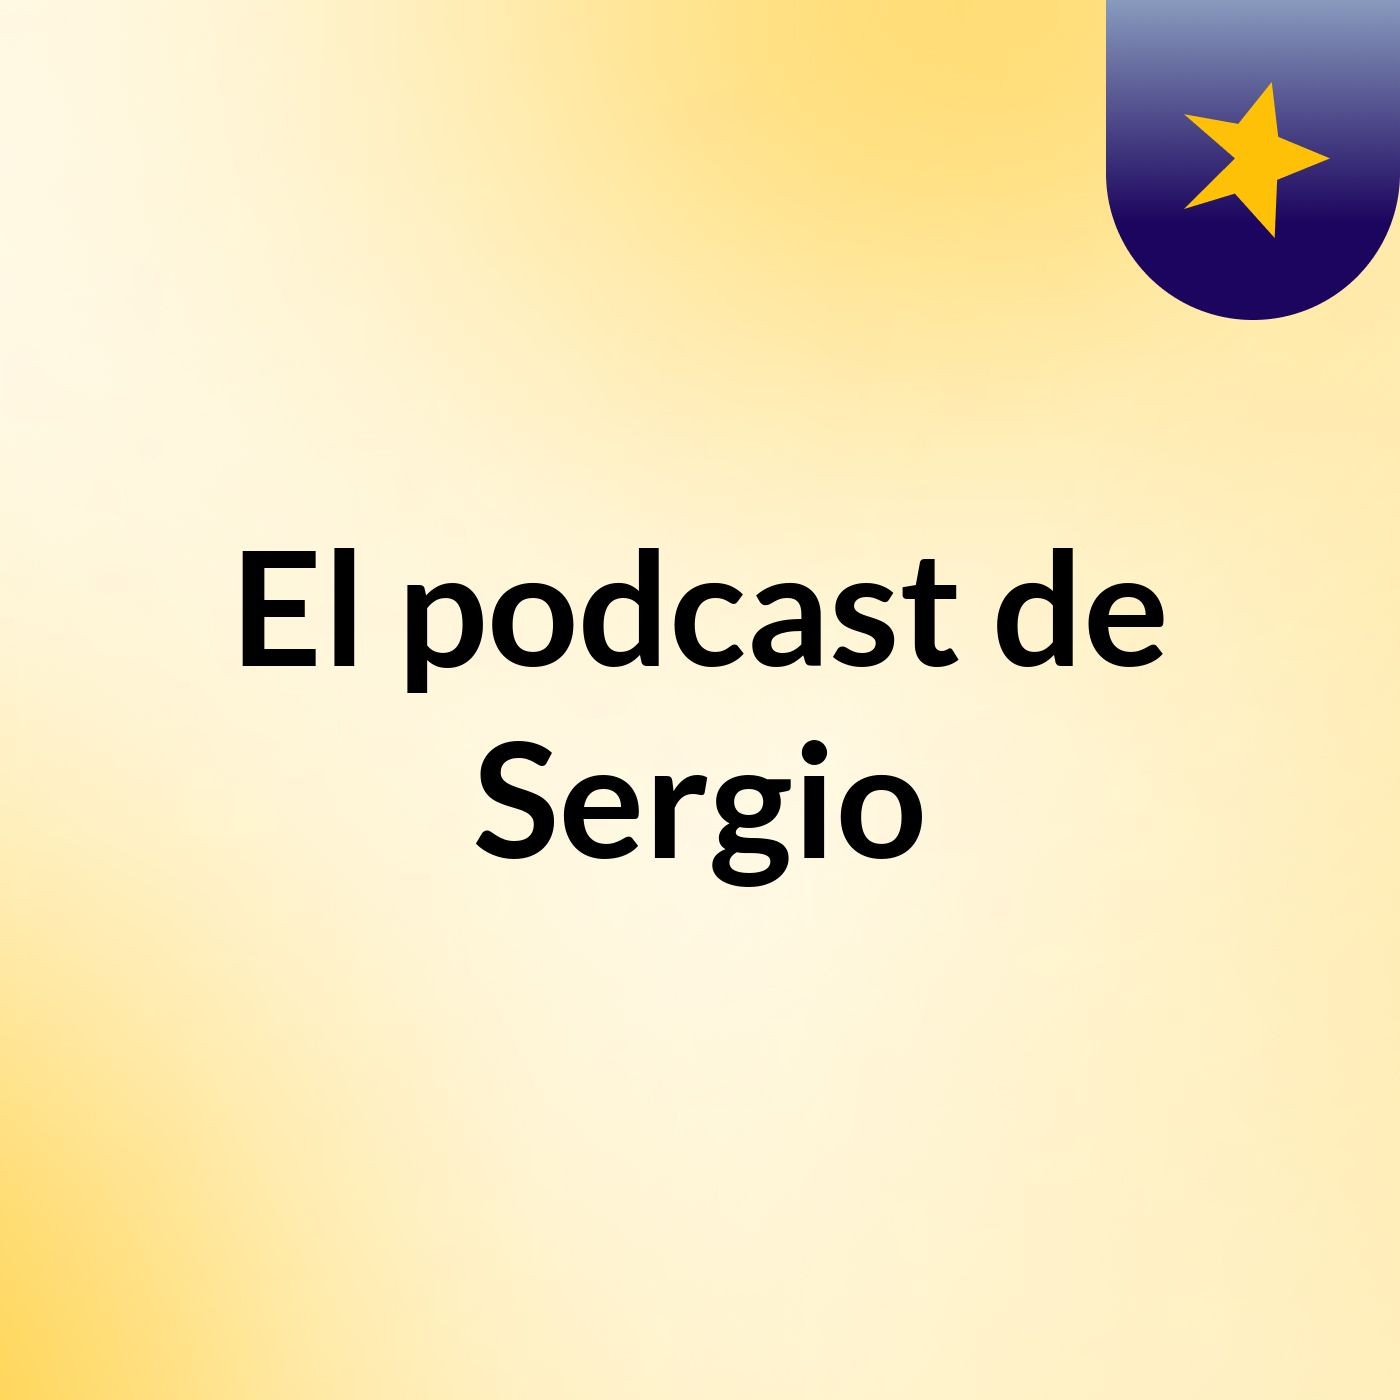 El podcast de Sergio